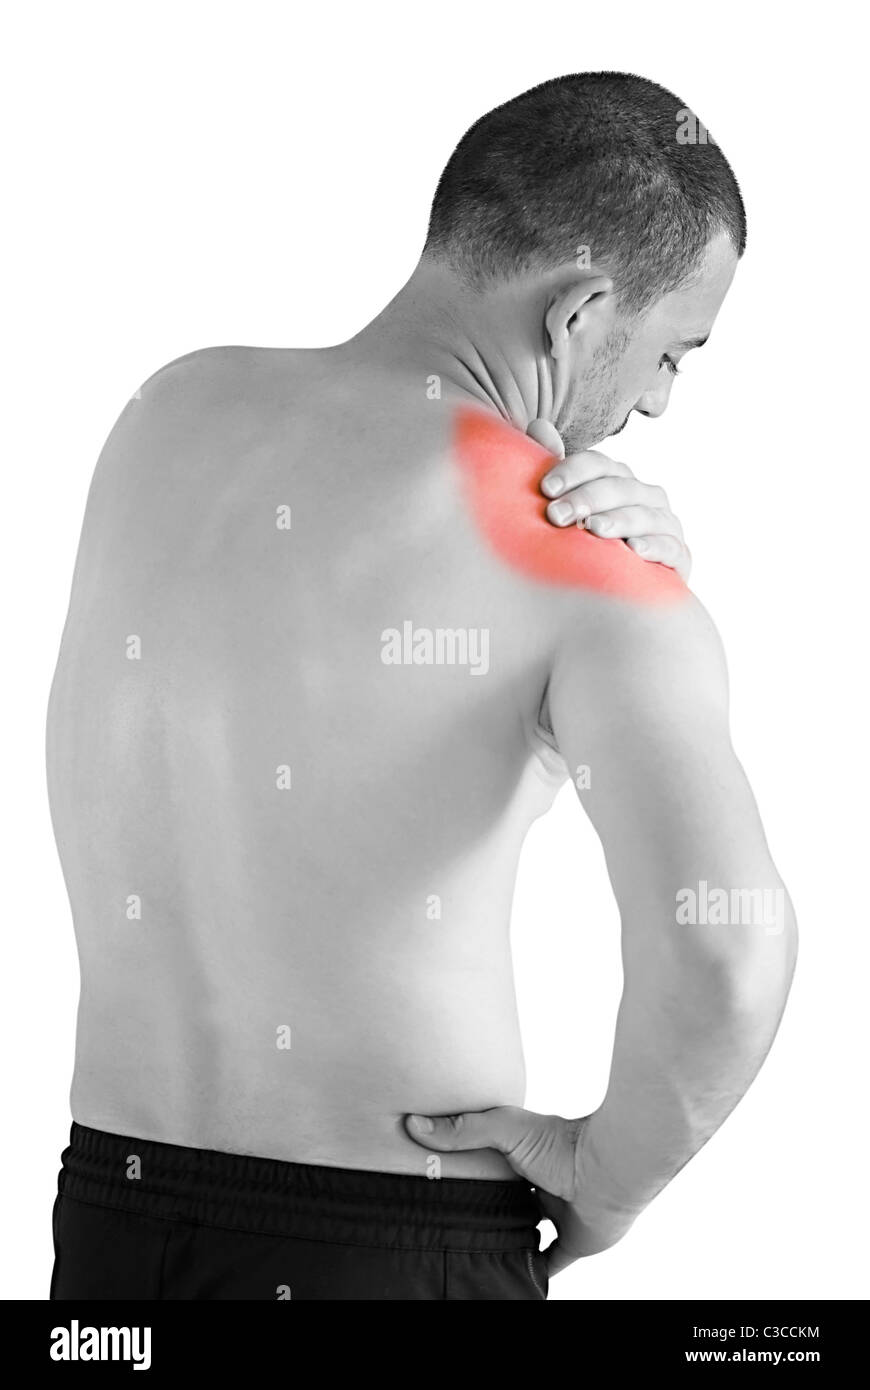 Сильные боли в левом плечевом суставе. Боли в плечевом суставе плече. Локализация боли в плече.